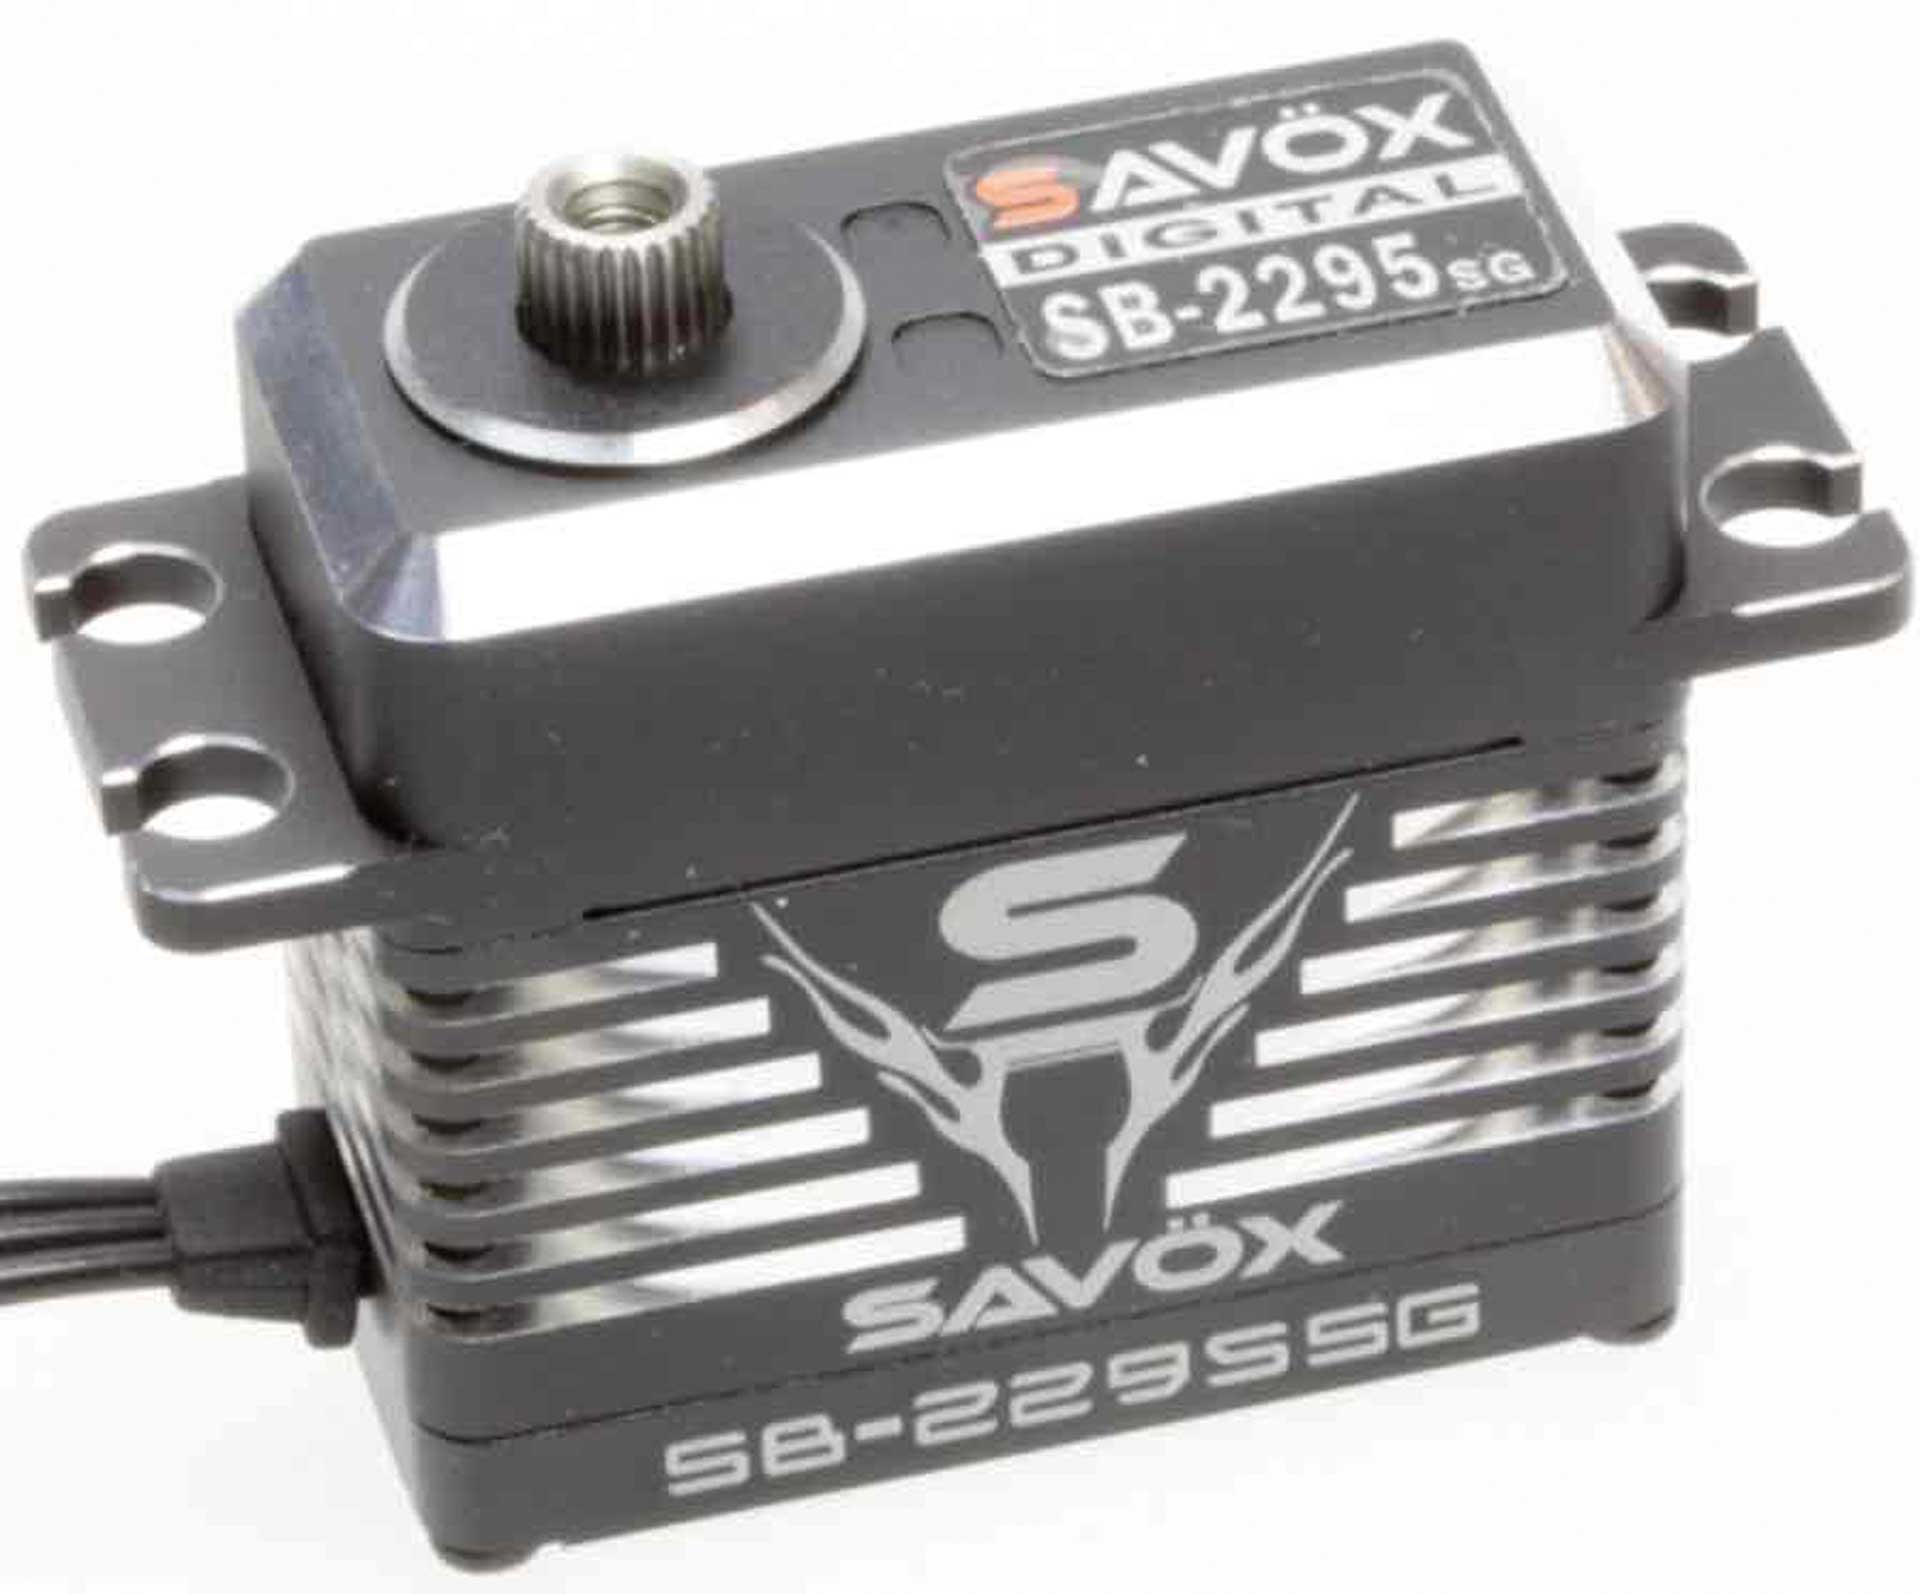 SAVÖX SB-2295SG (8,4V/40kg/0,05s) Standard Brushless Digital Servo Boîtier en aluminium